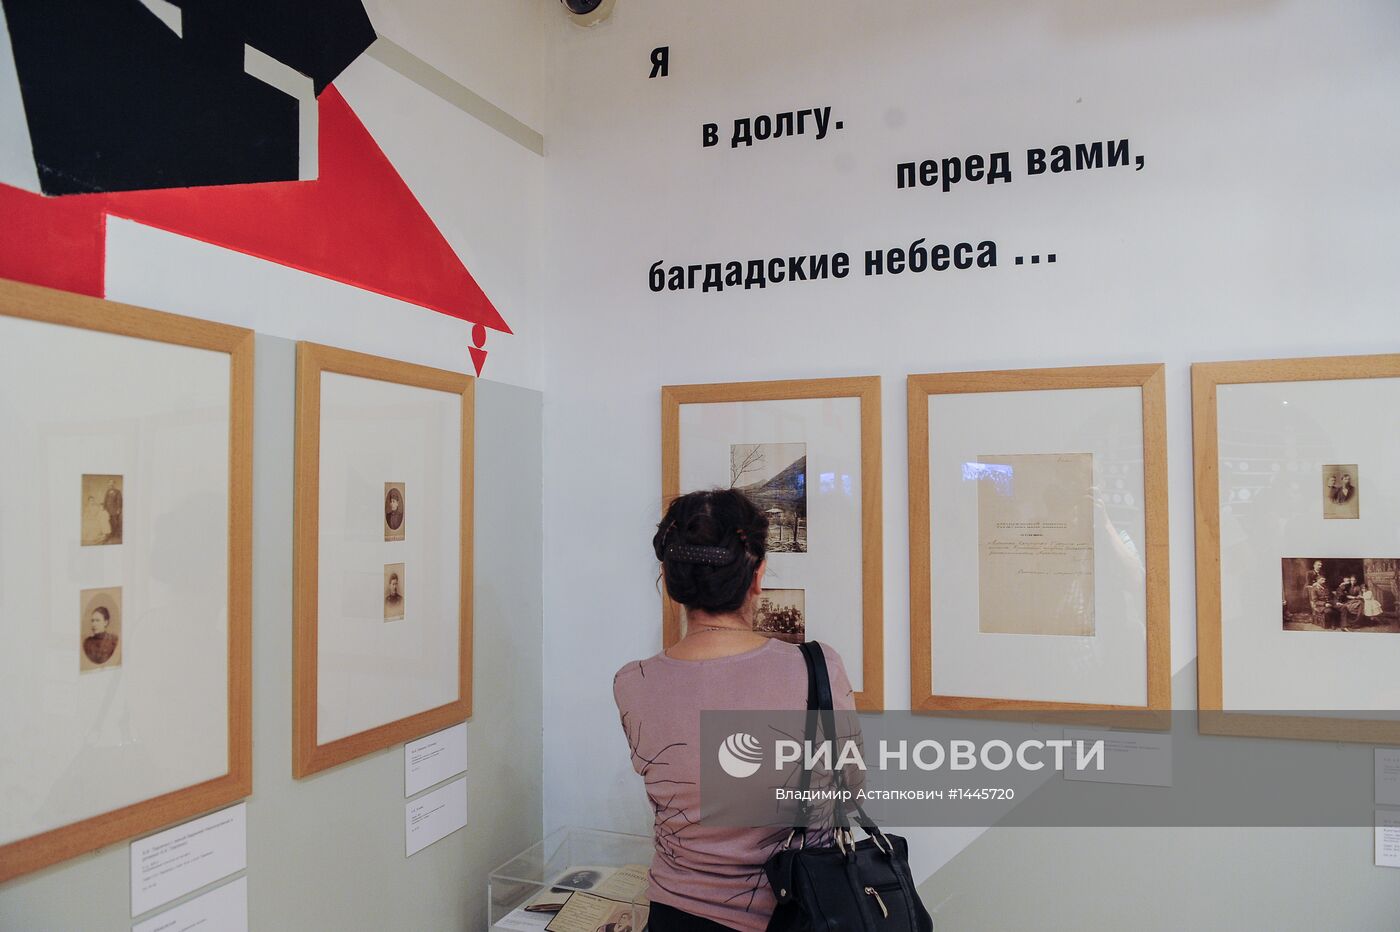 Открытие выставки "Семья Маяковских" в "Домике Чехова"